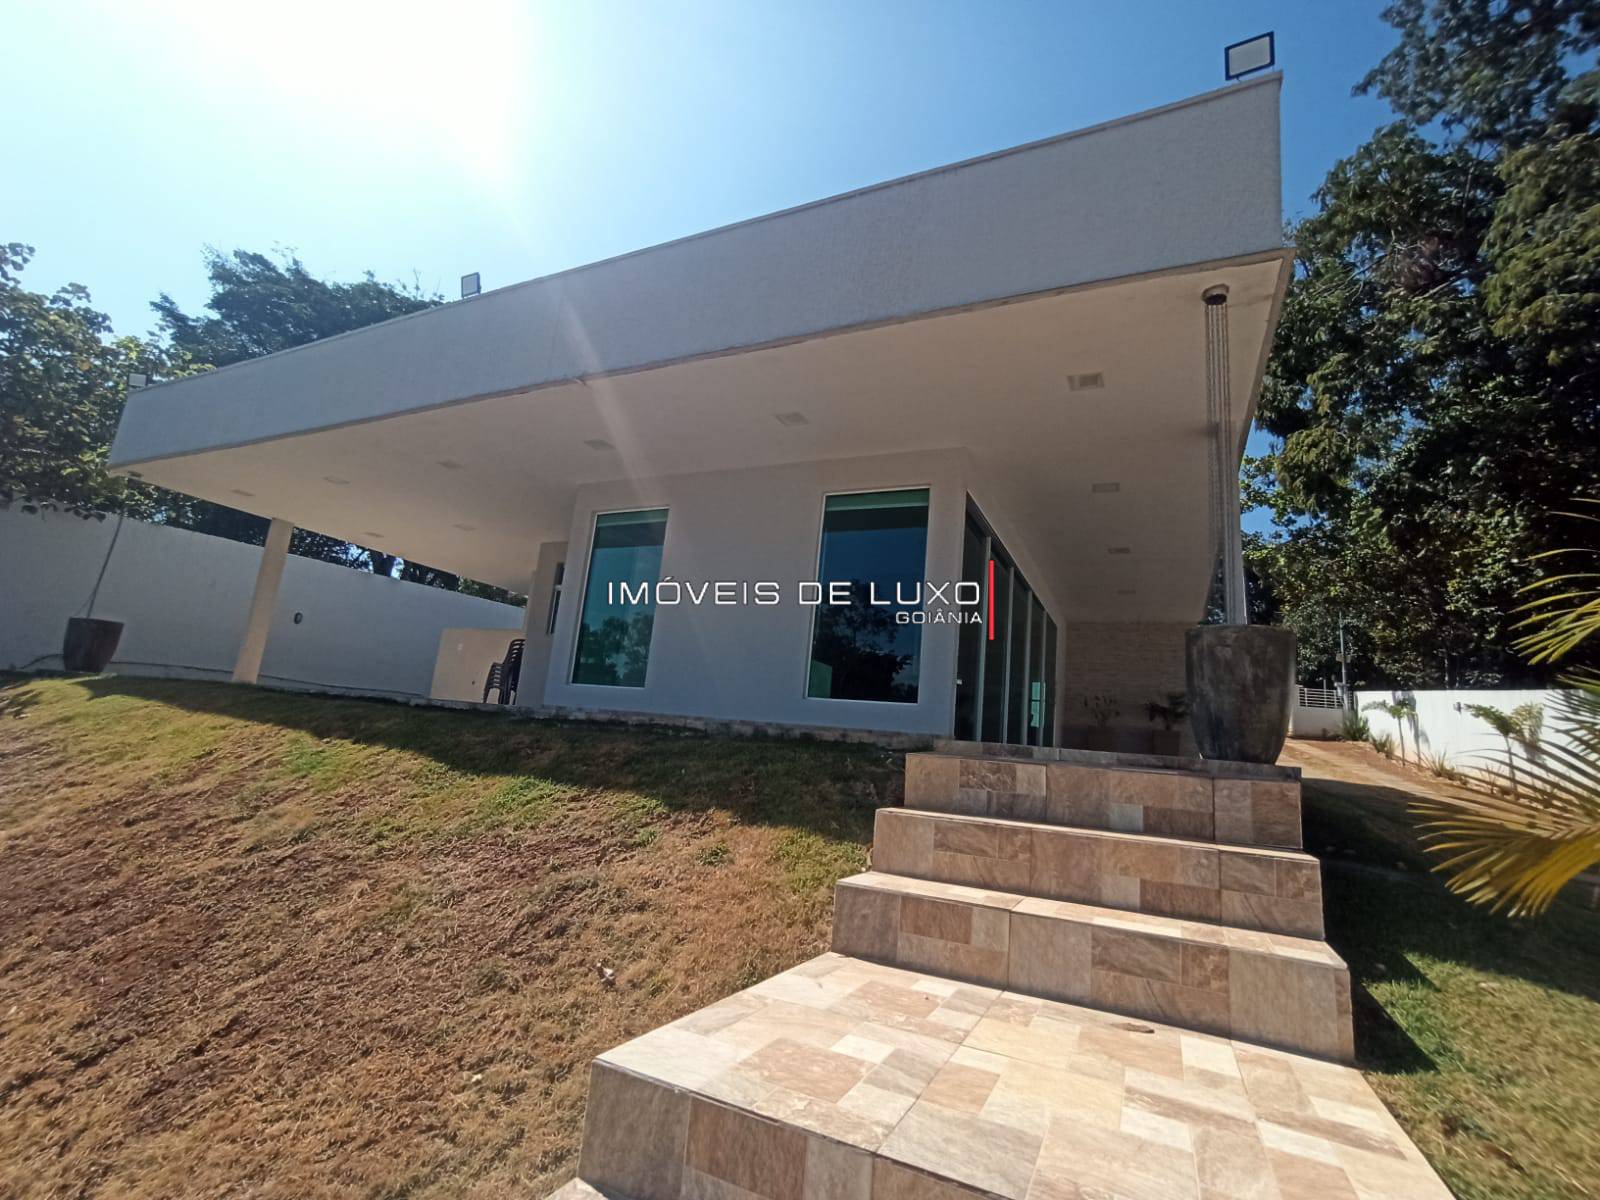 Imóveis de Luxo - Casa 2 suites com projeto moderno e arrojado!! Cond Villa Verde